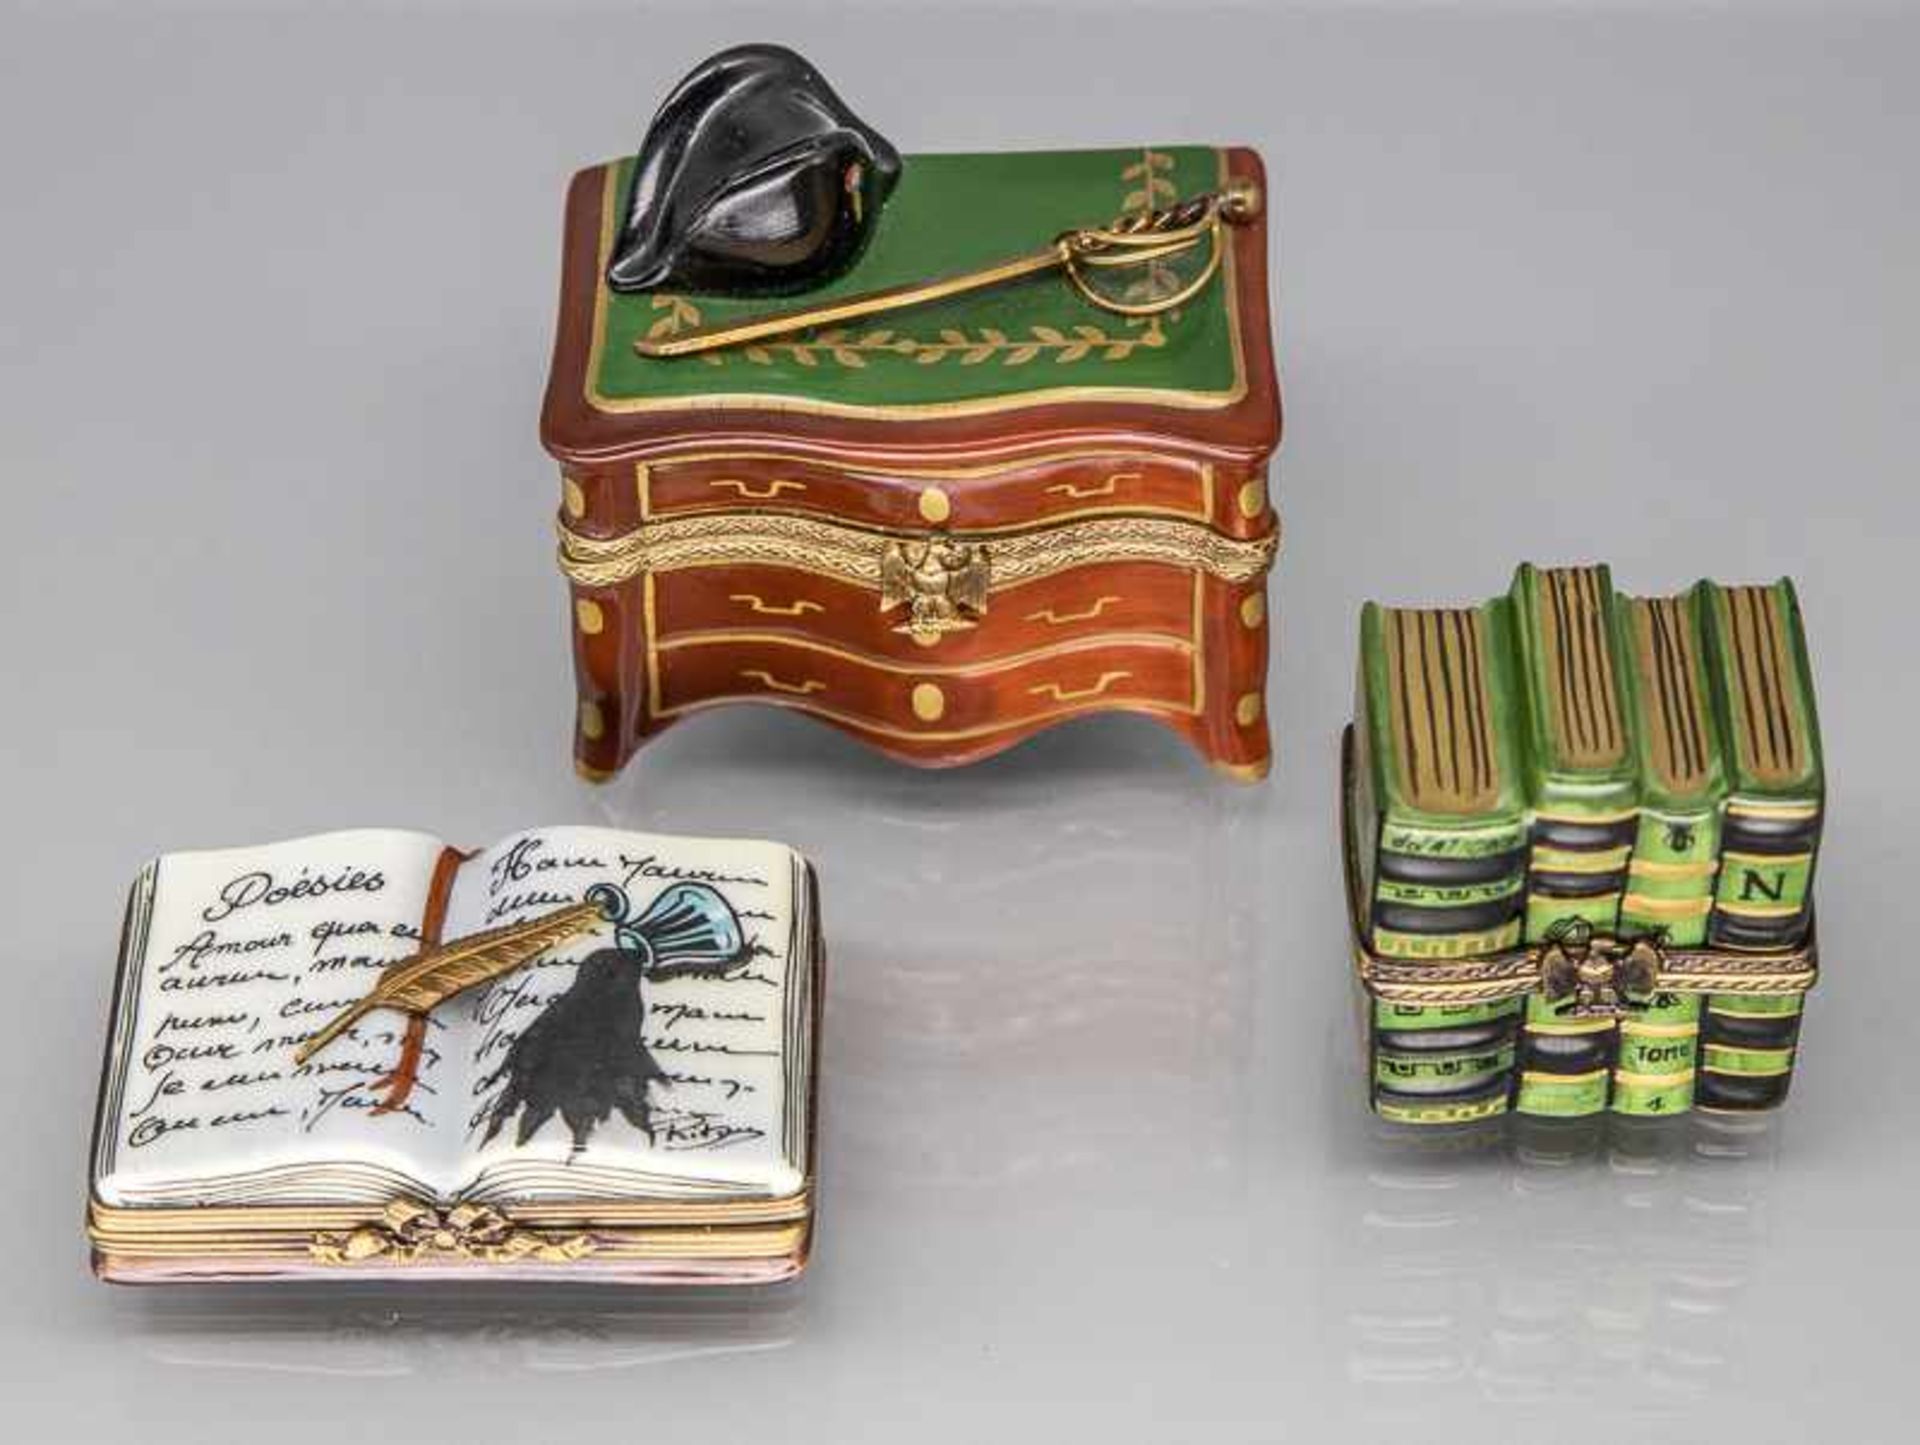 3 Sammler-Miniaturdeckeldosen ("Bücher"/"Kommode Napoleon"), Gerard Ribiere, Limoges/Frankreich,